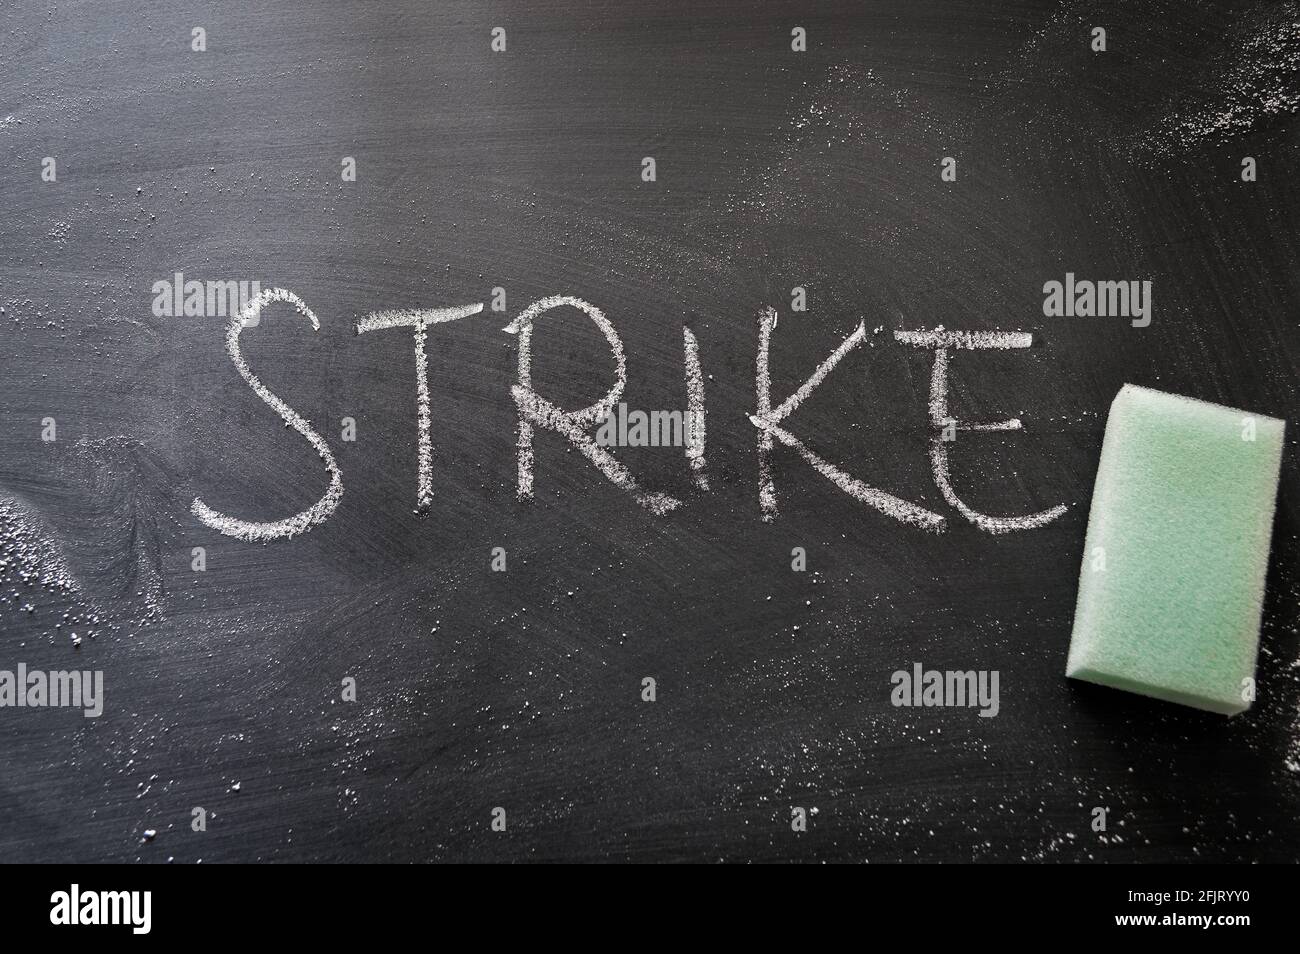 sciopero di cancellazione, parola scritta a mano sulla lavagna cancellando il concetto Foto Stock